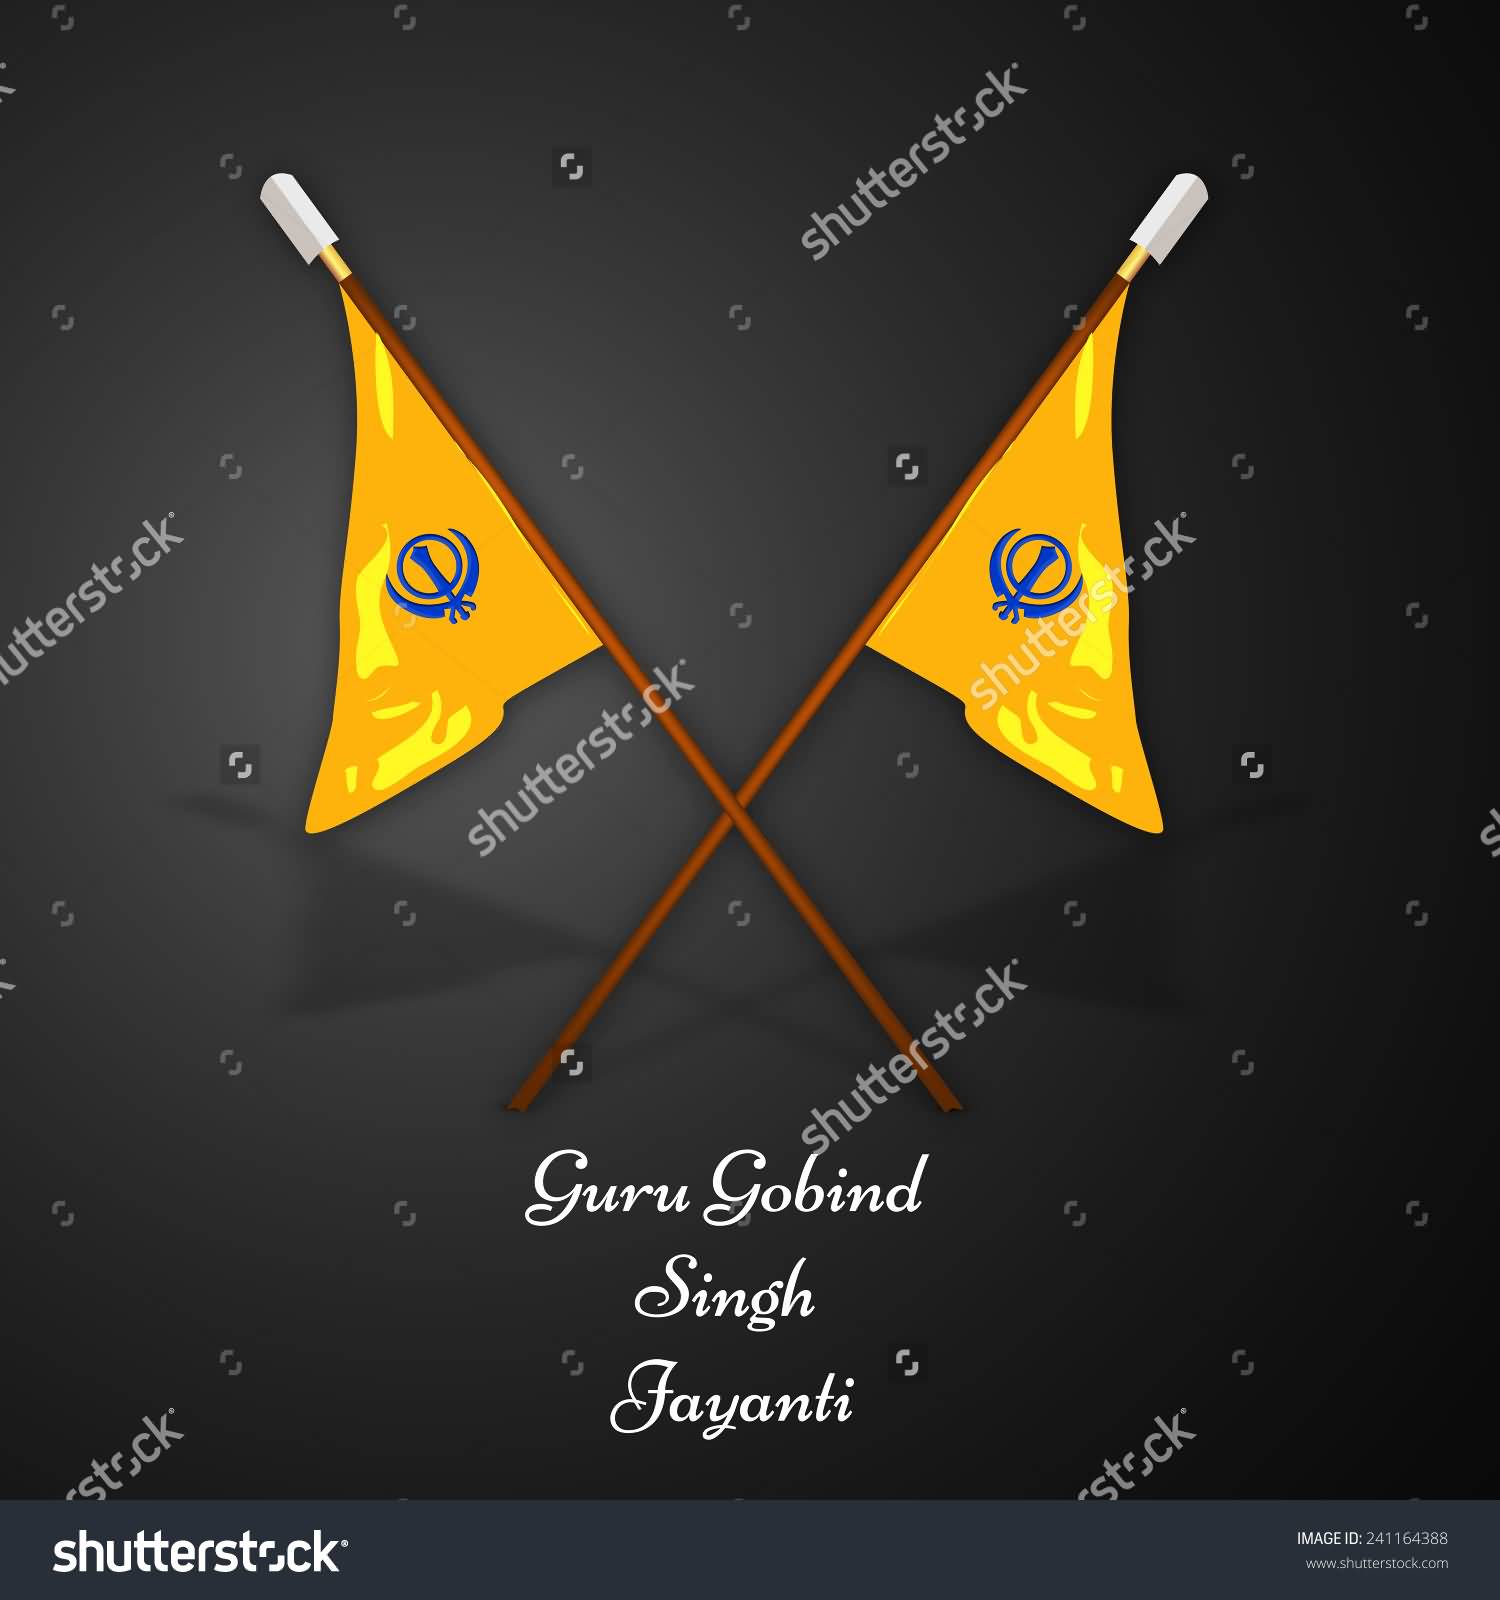 Guru Gobind Singh Jayanti Wishes With Sikh Flags Illustration